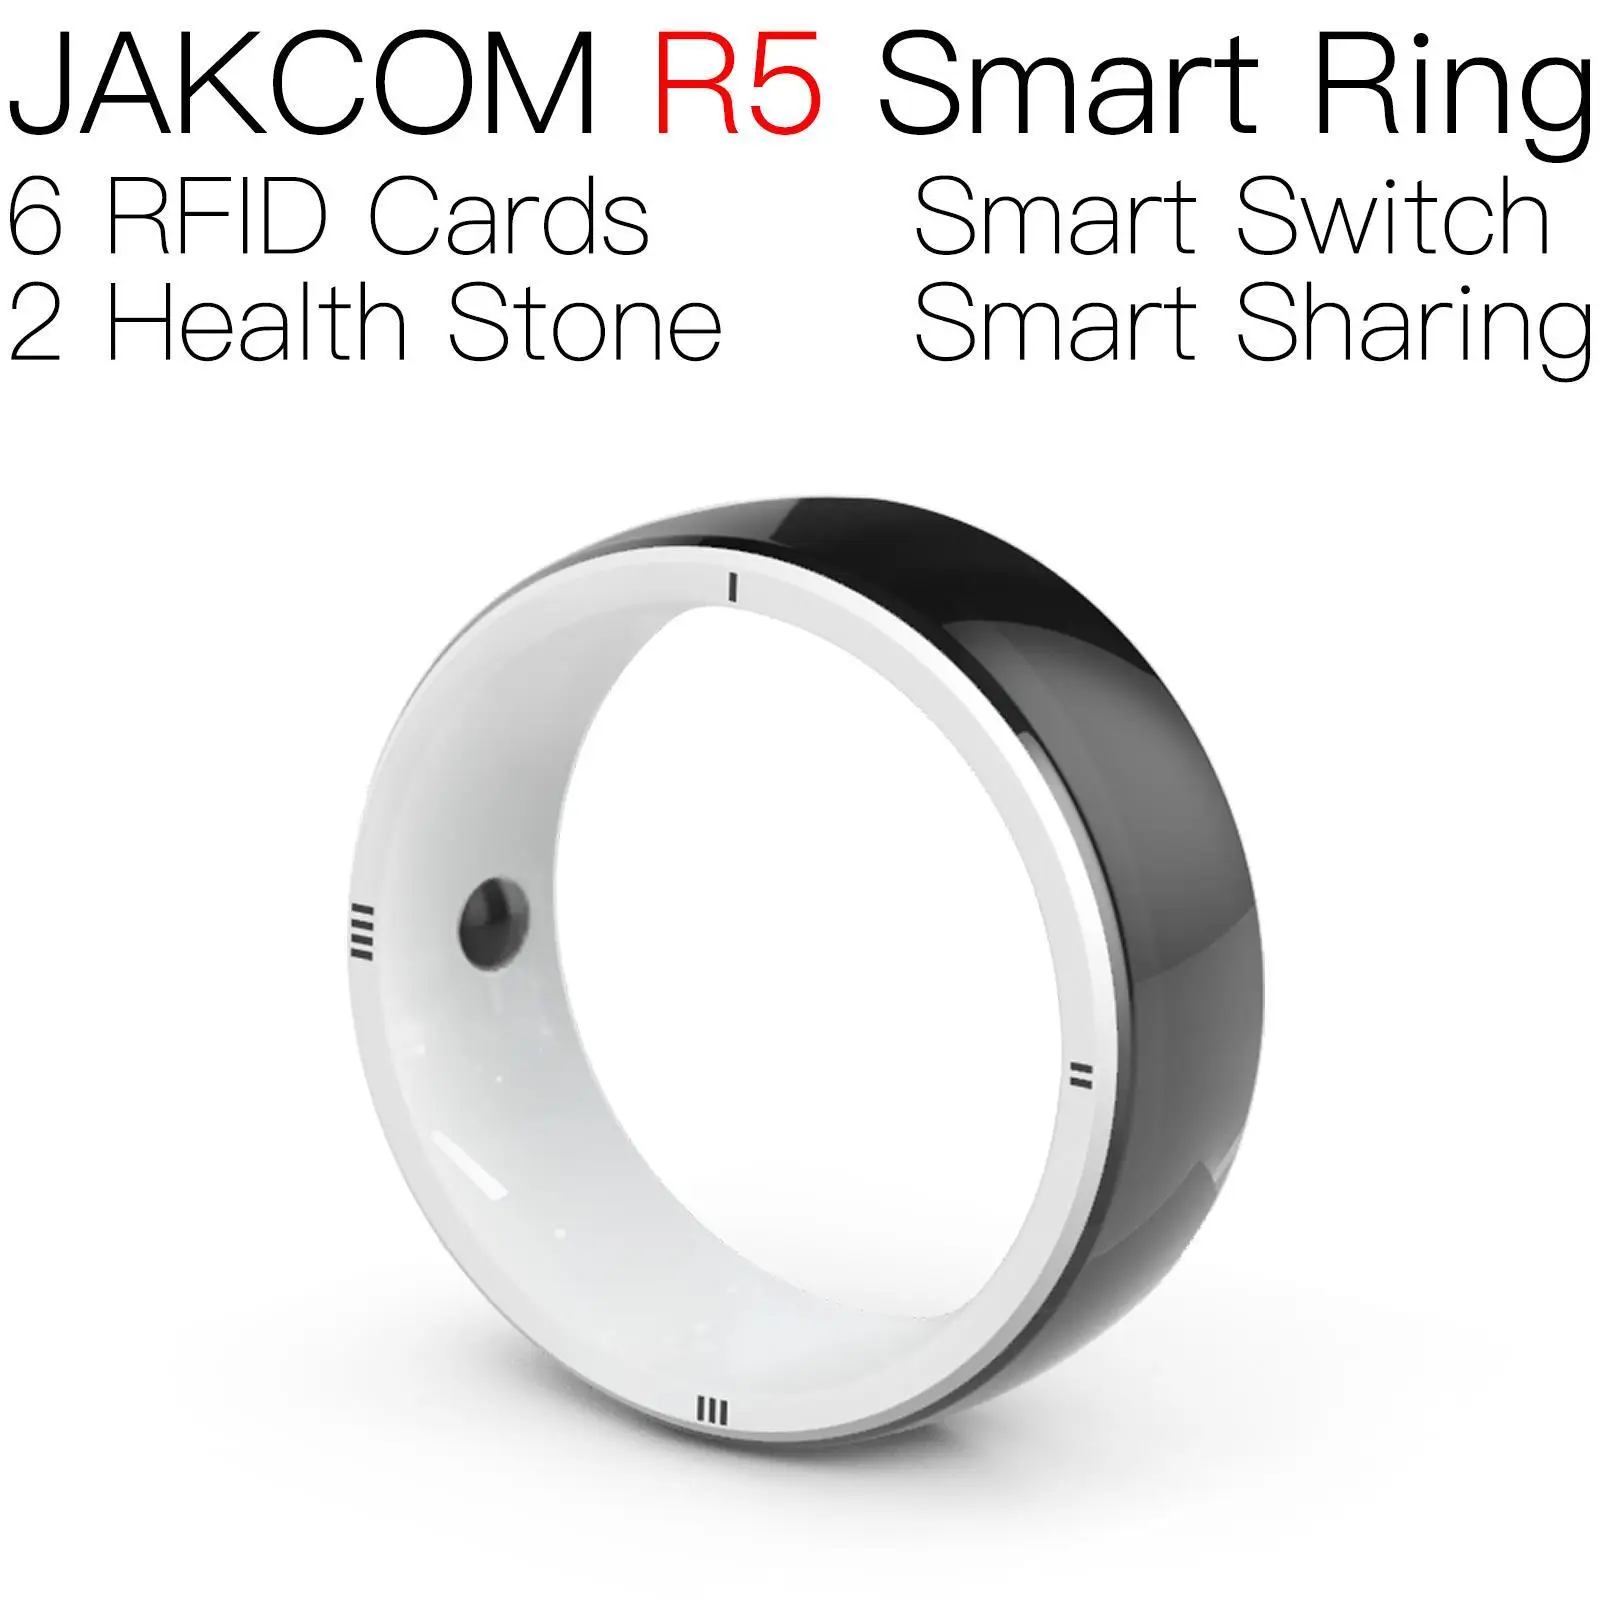 JAKCOM R5 Smart Ring better than watch mibro air smartwatch smart band monitor light bar dt100 jordan 4 black